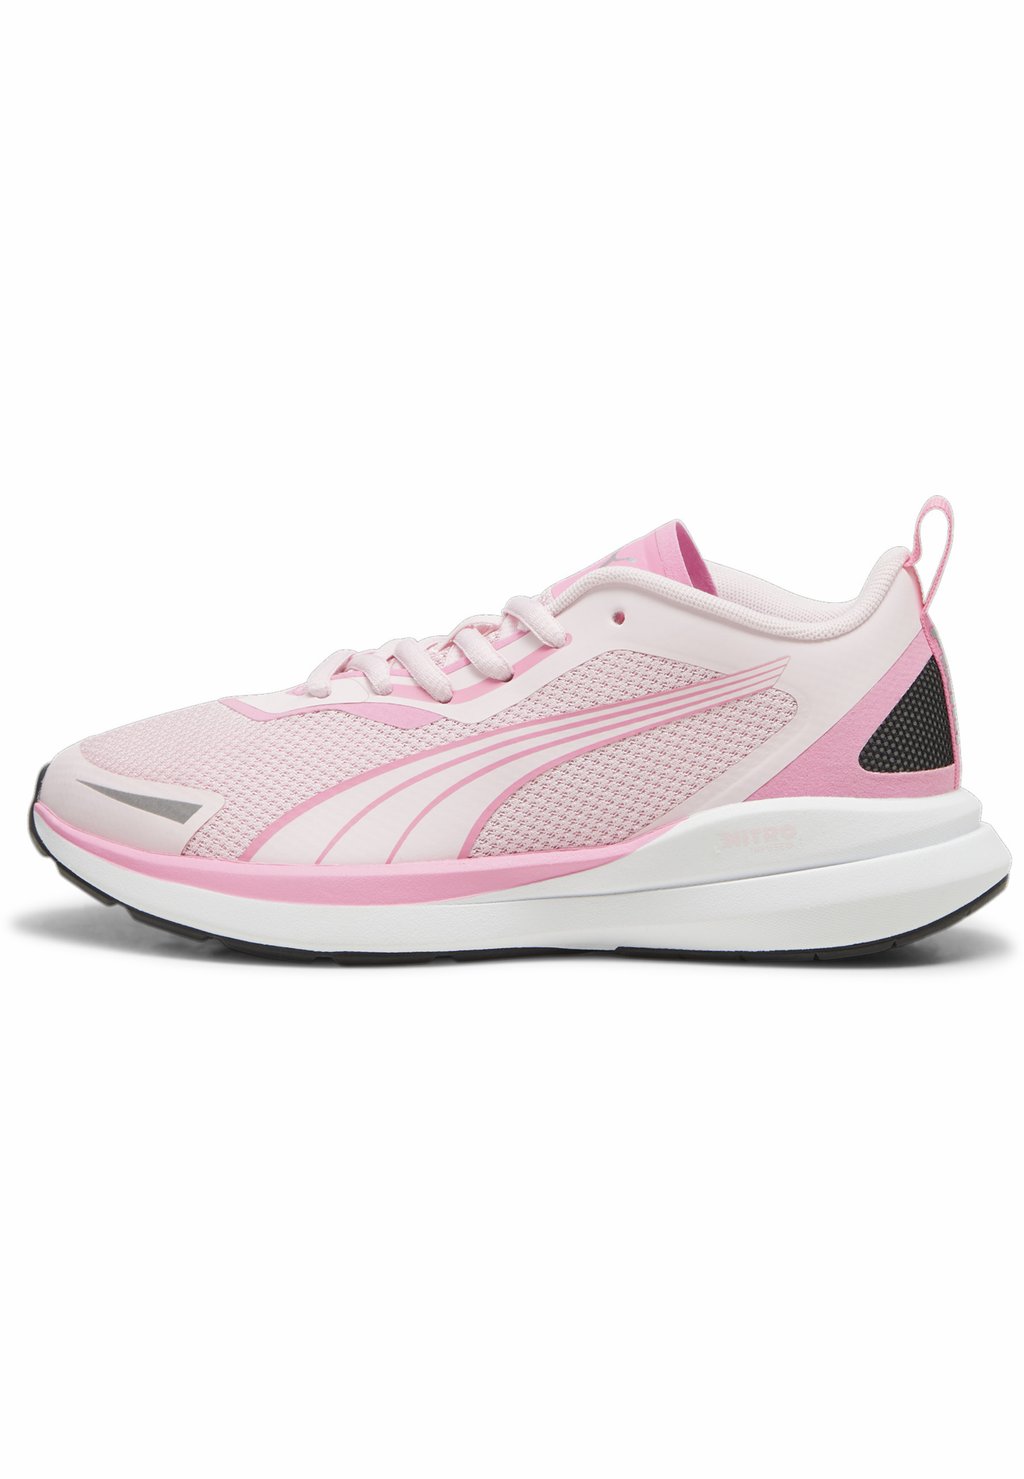 Нейтральные кроссовки KRUZ NITRO Puma, цвет whisp of pink fast pink white